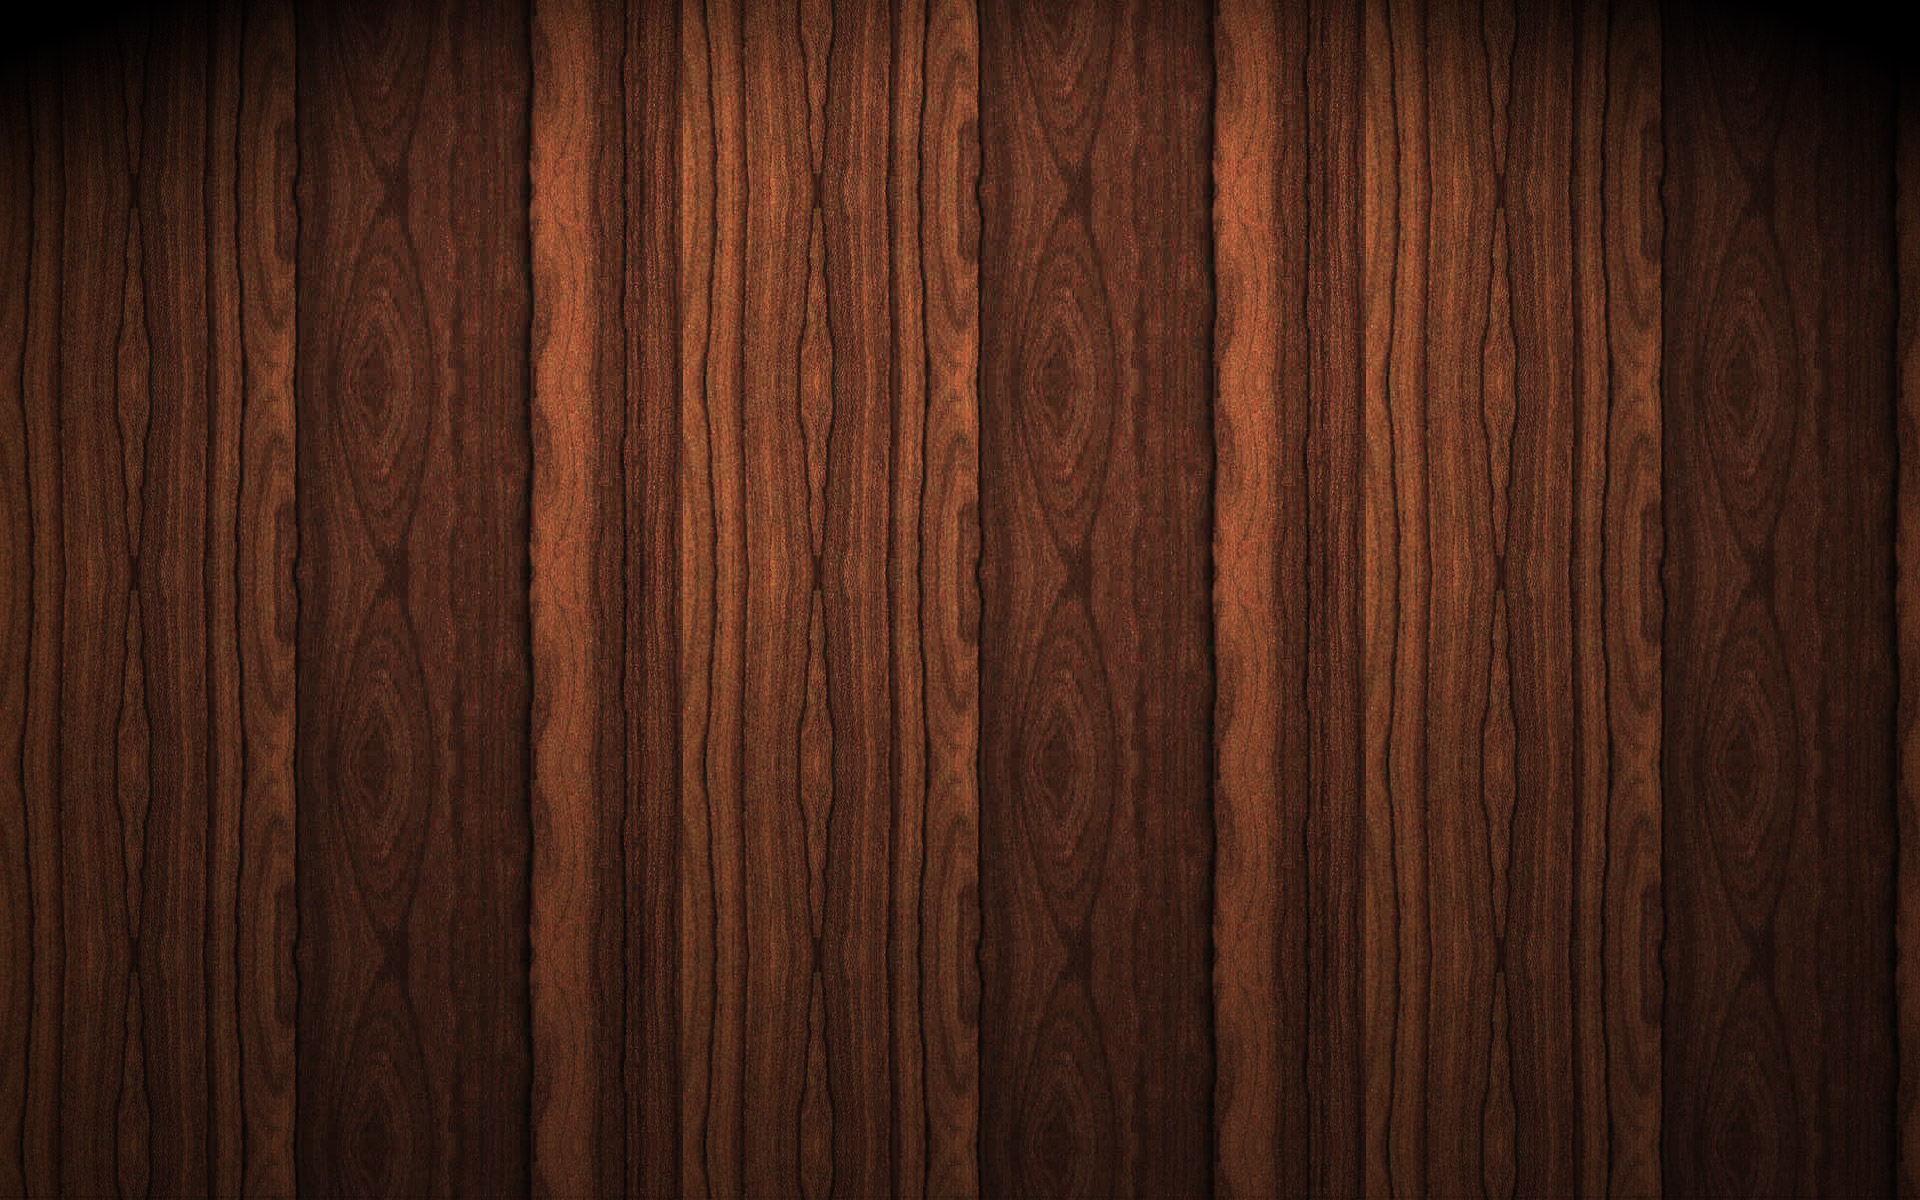 47+] Wood Texture Wallpaper - WallpaperSafari